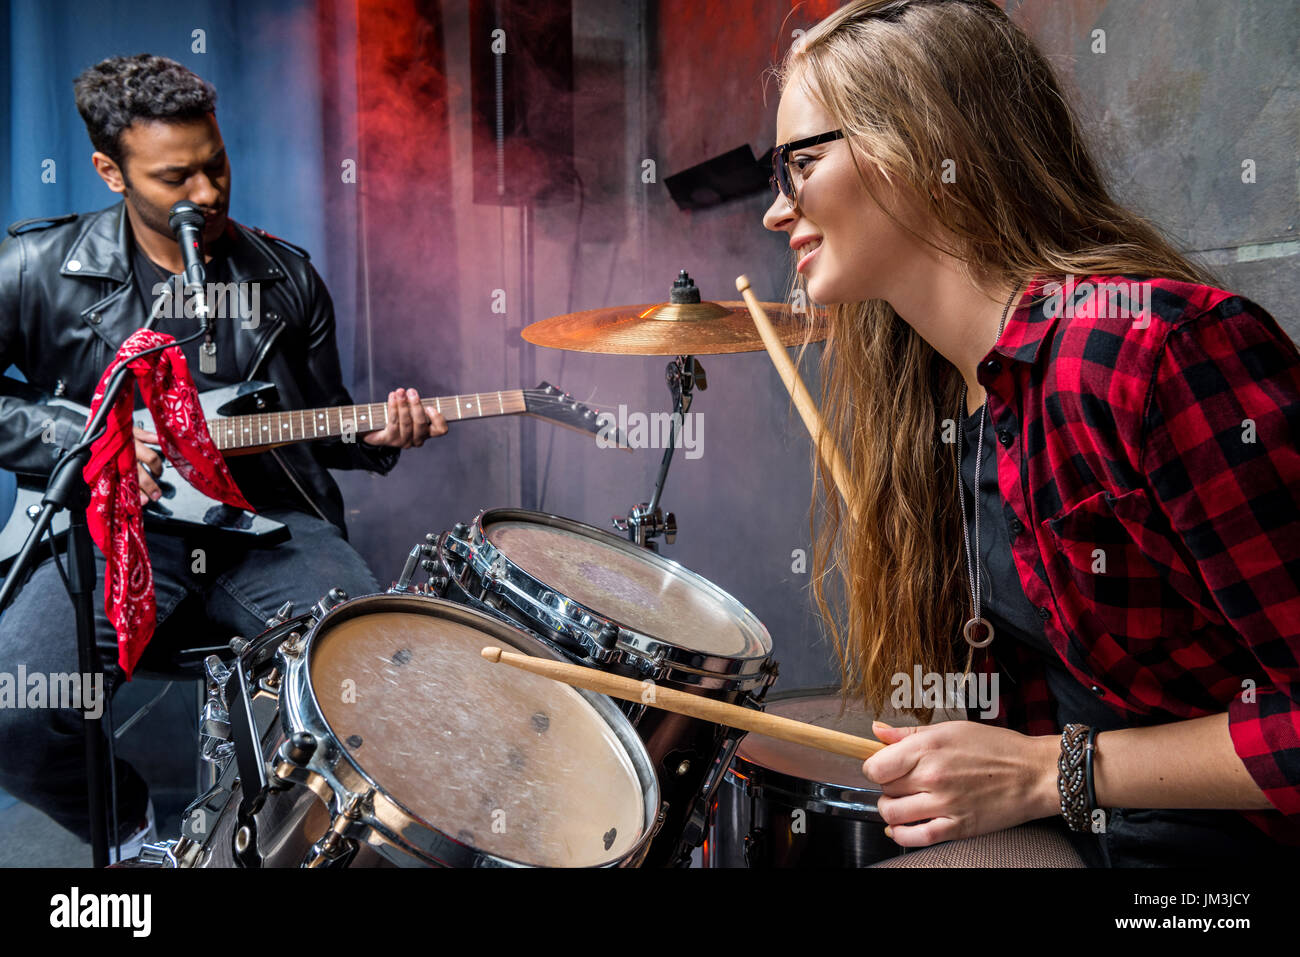 Vue de côté de femme à jouer de la batterie avec l'homme qui joue de la guitare, rock band concept Banque D'Images